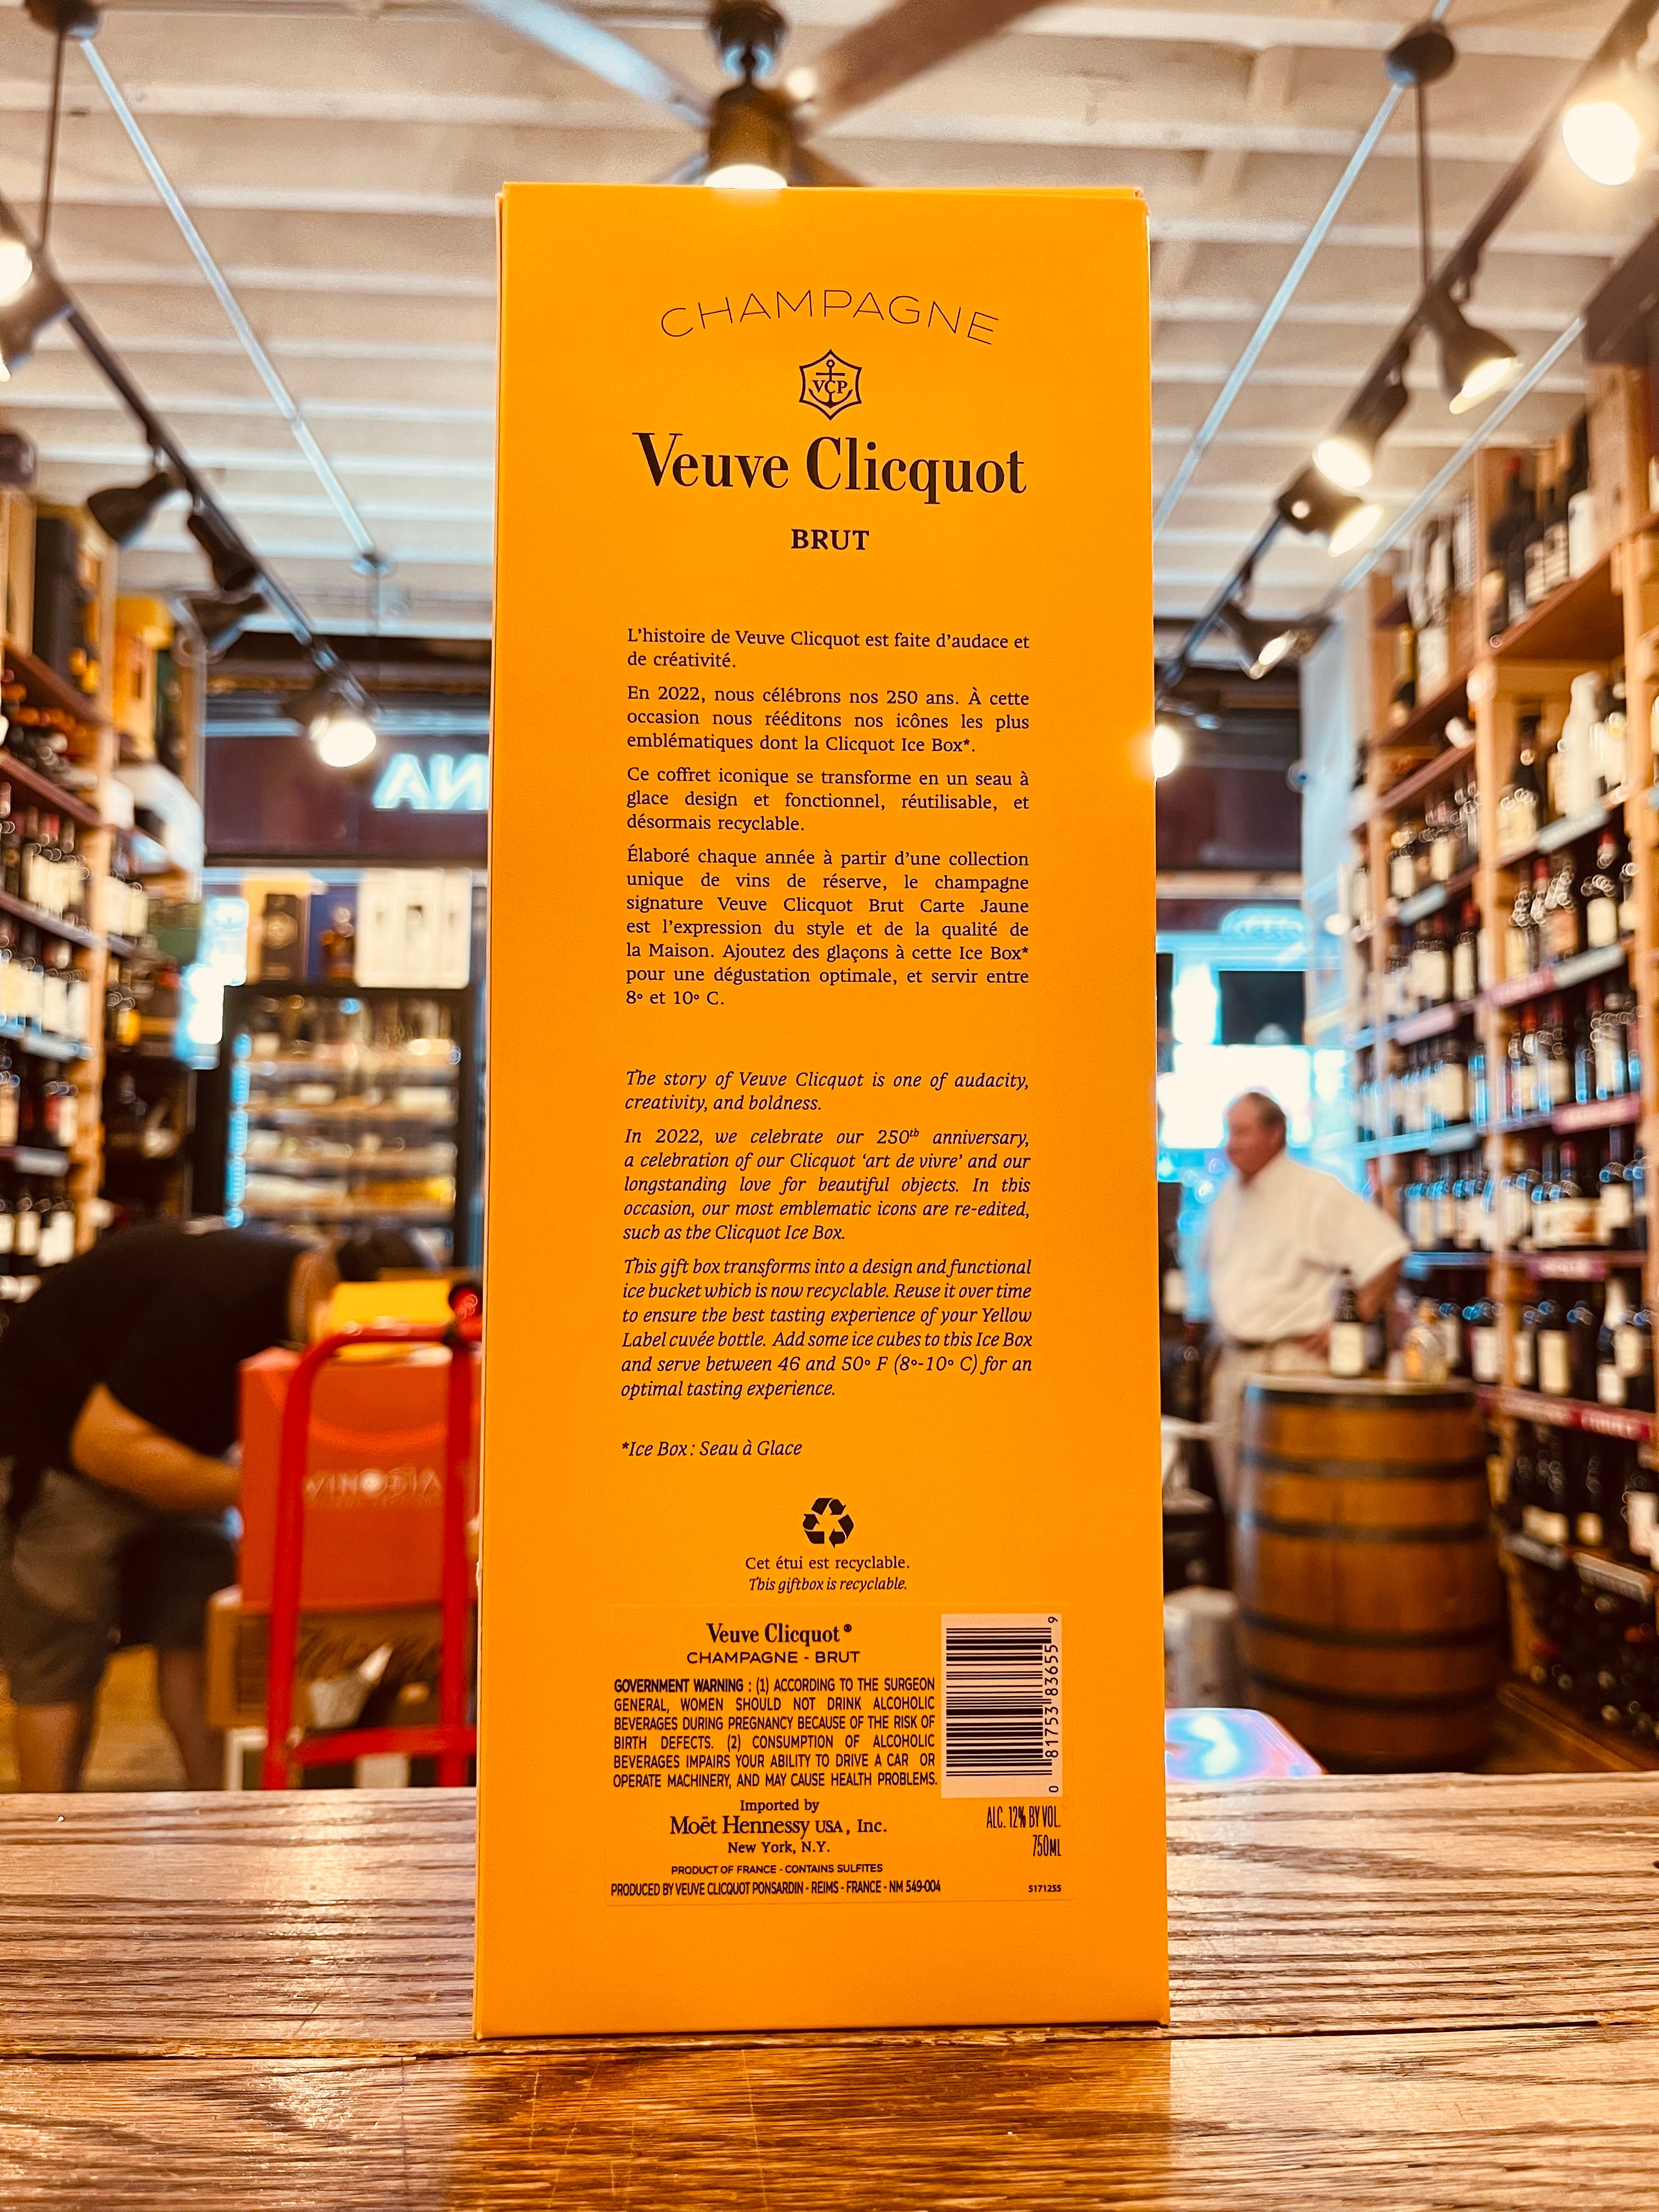 Veuve Clicquot Brut Ice Box 750mL